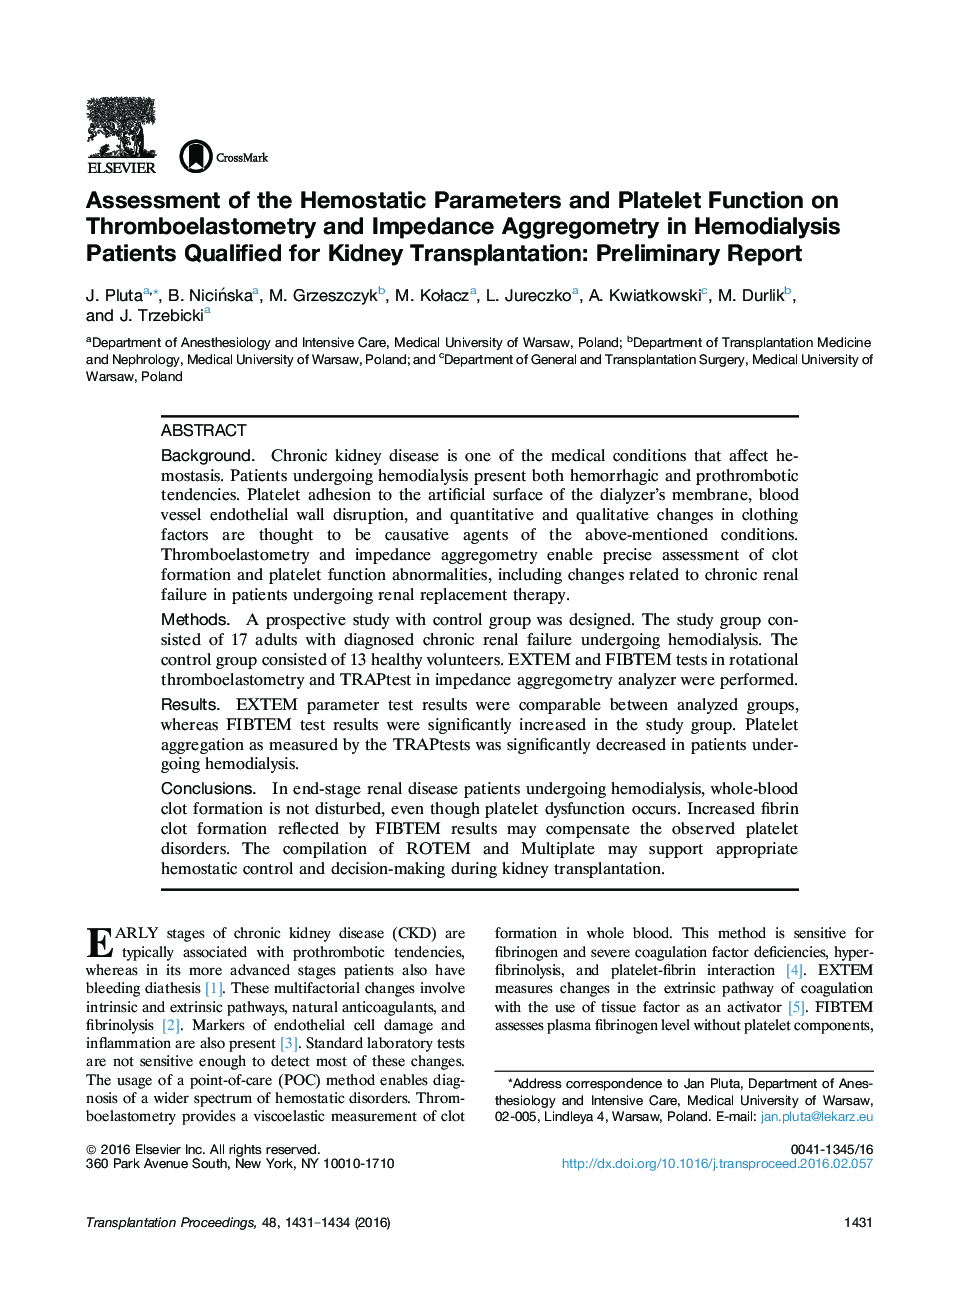 بررسی پارامترهای هموستاتیک و عملکرد پلاکتی بر روی Thromboelastometry و Aggregometry امپدانس در بیماران همودیالیزی معتبر برای پیوند کلیه: گزارش اولیه